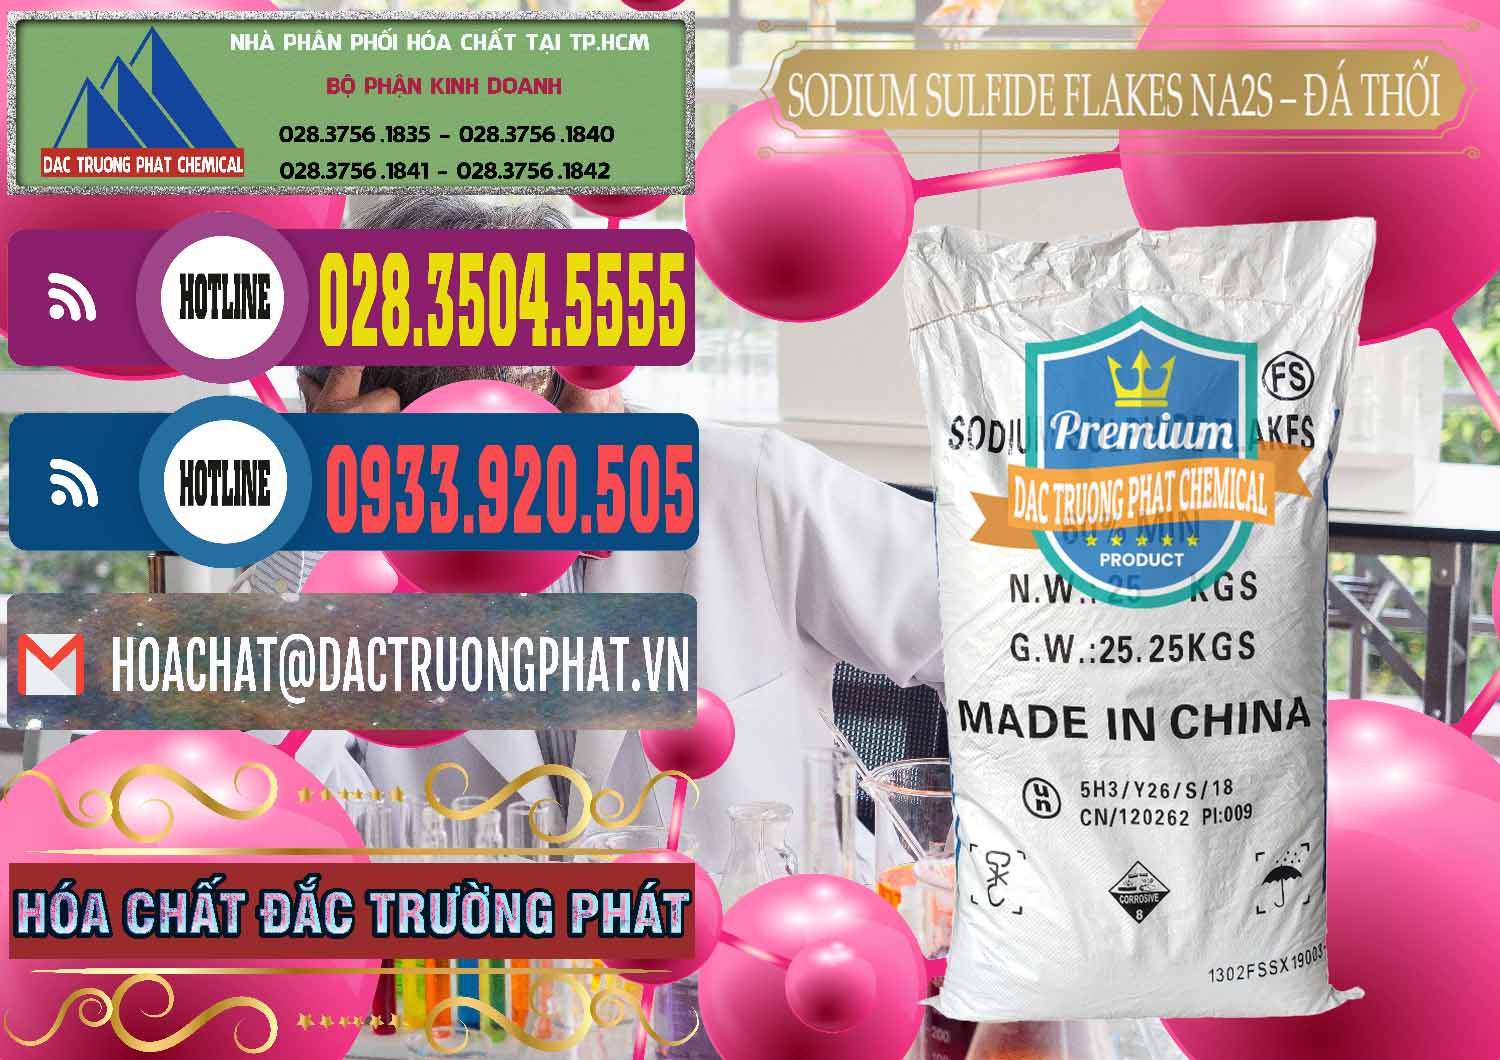 Công ty chuyên bán _ cung cấp Sodium Sulfide Flakes NA2S – Đá Thối Đỏ Trung Quốc China - 0150 - Nơi chuyên cung ứng _ phân phối hóa chất tại TP.HCM - muabanhoachat.com.vn